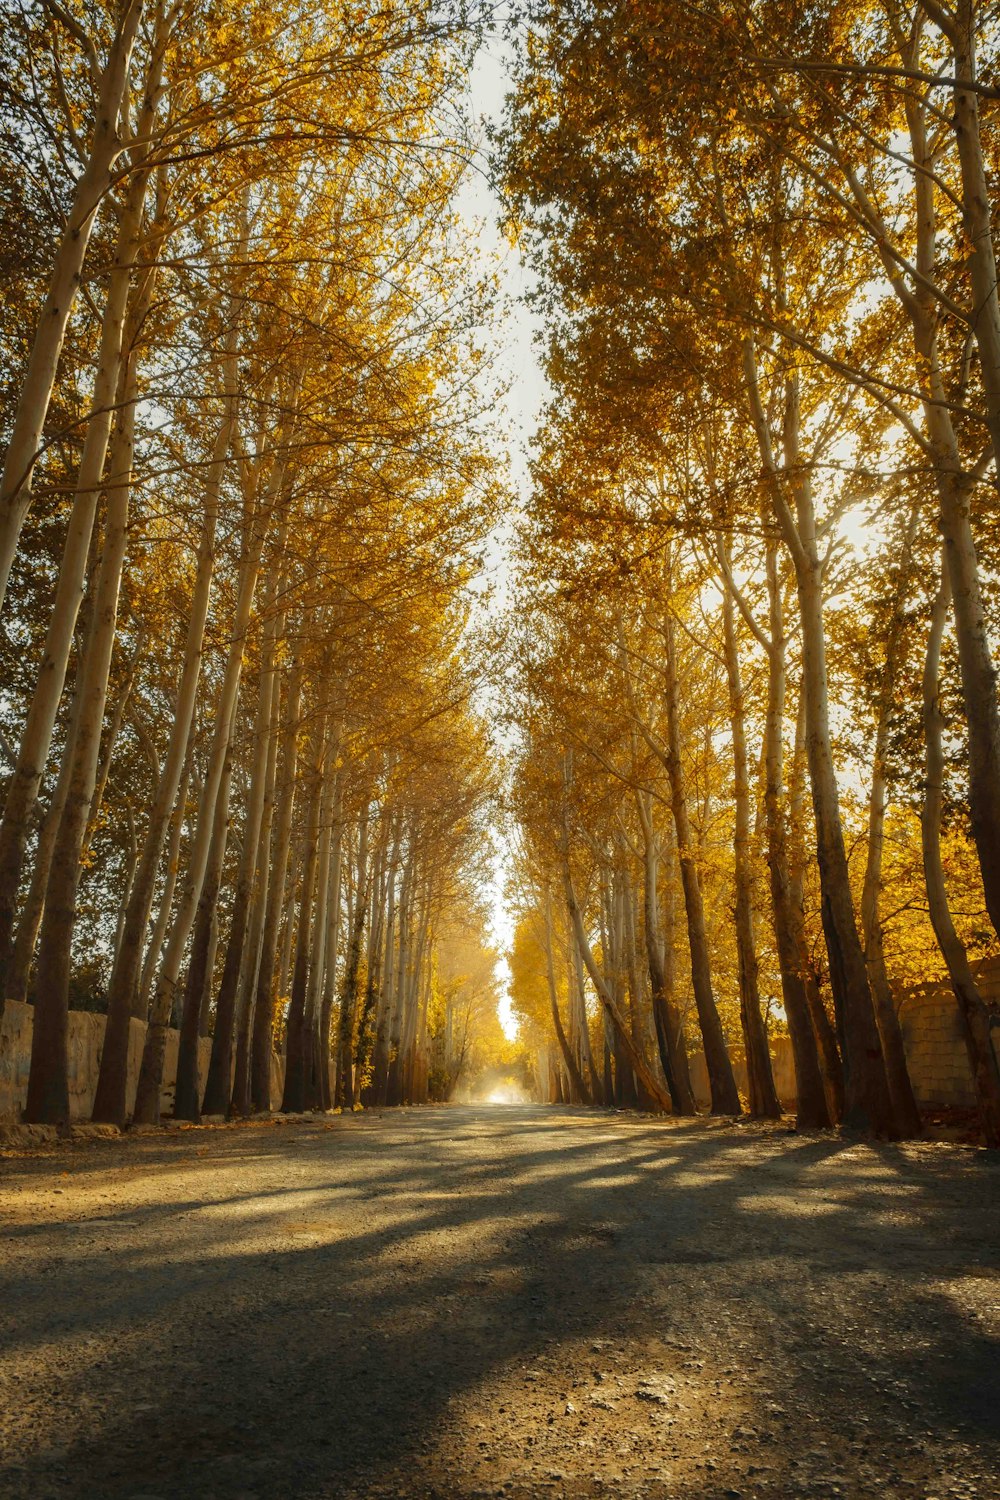 una strada sterrata circondata da alberi con foglie gialle